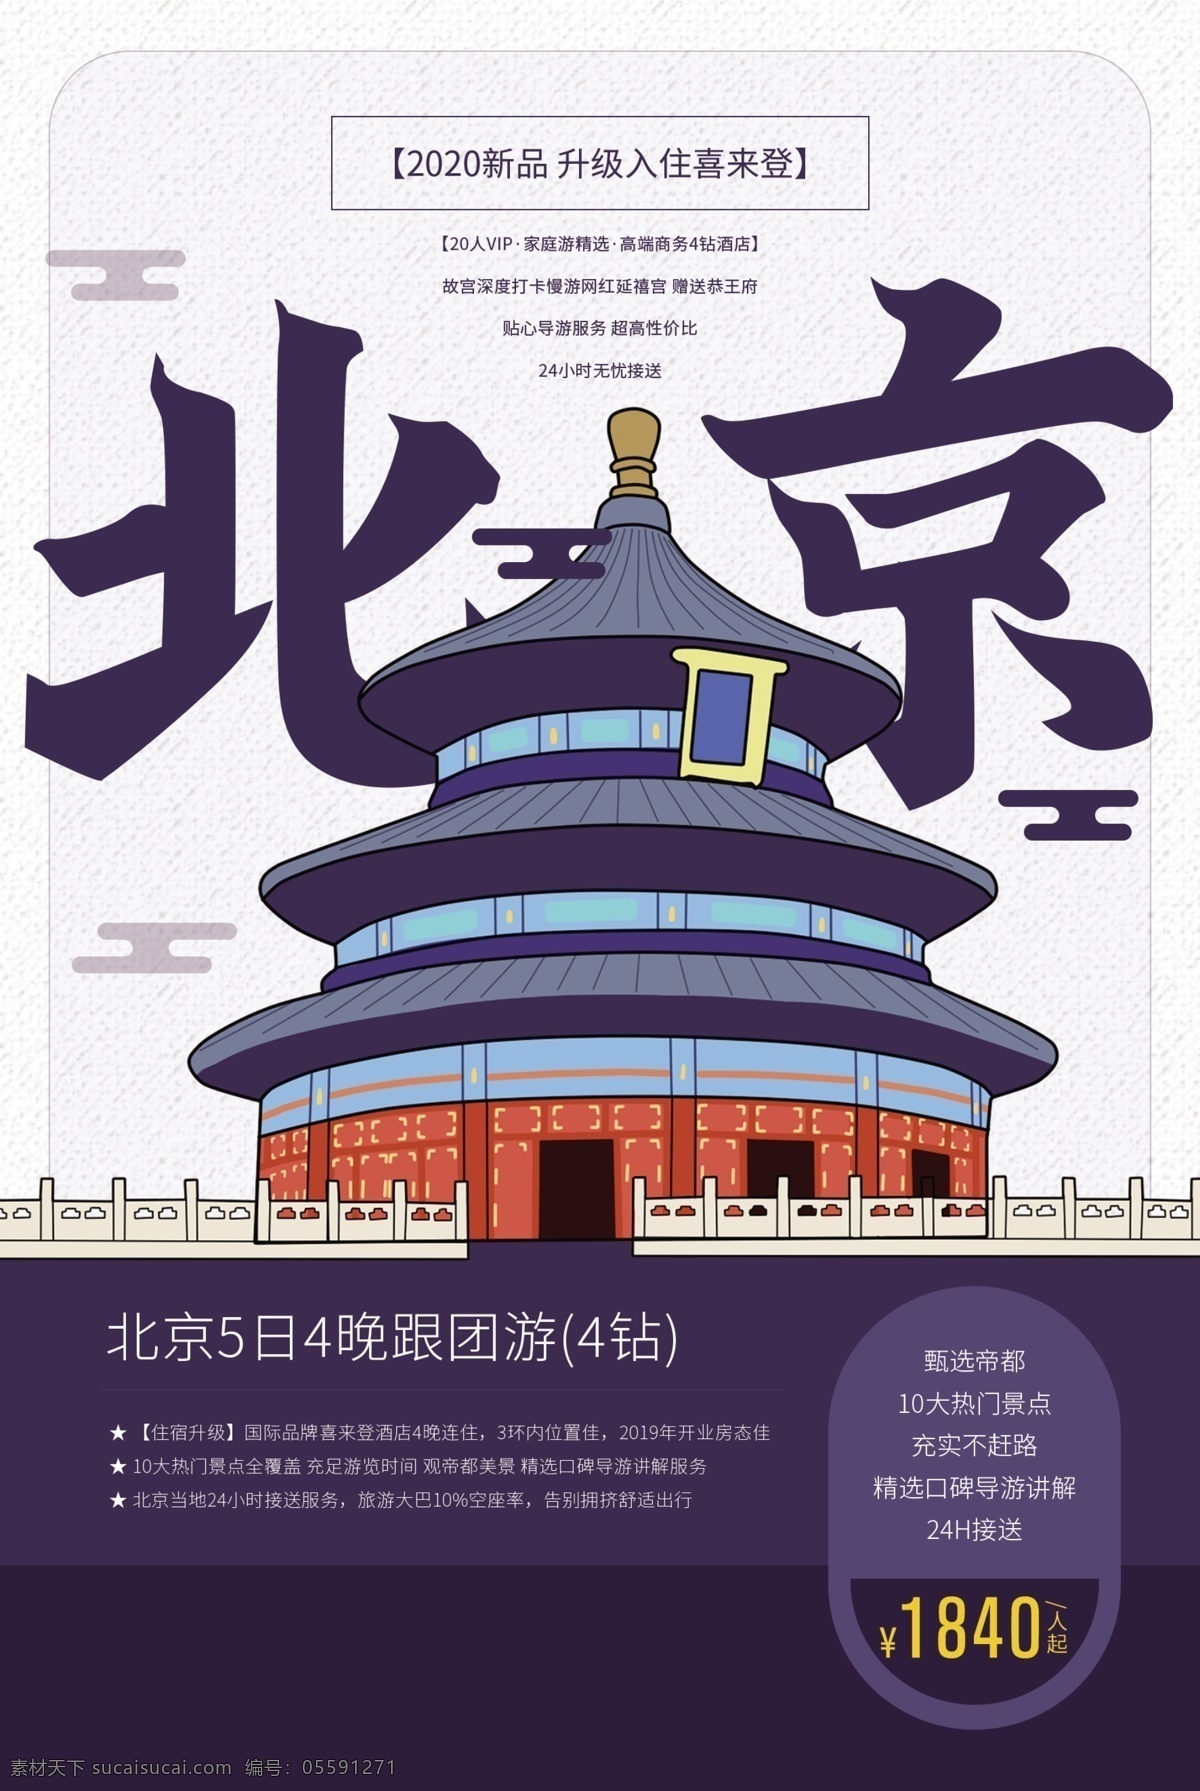 畅游 北京 旅游 旅行 活动 宣传海报 宣传 海报 旅游景点 景区